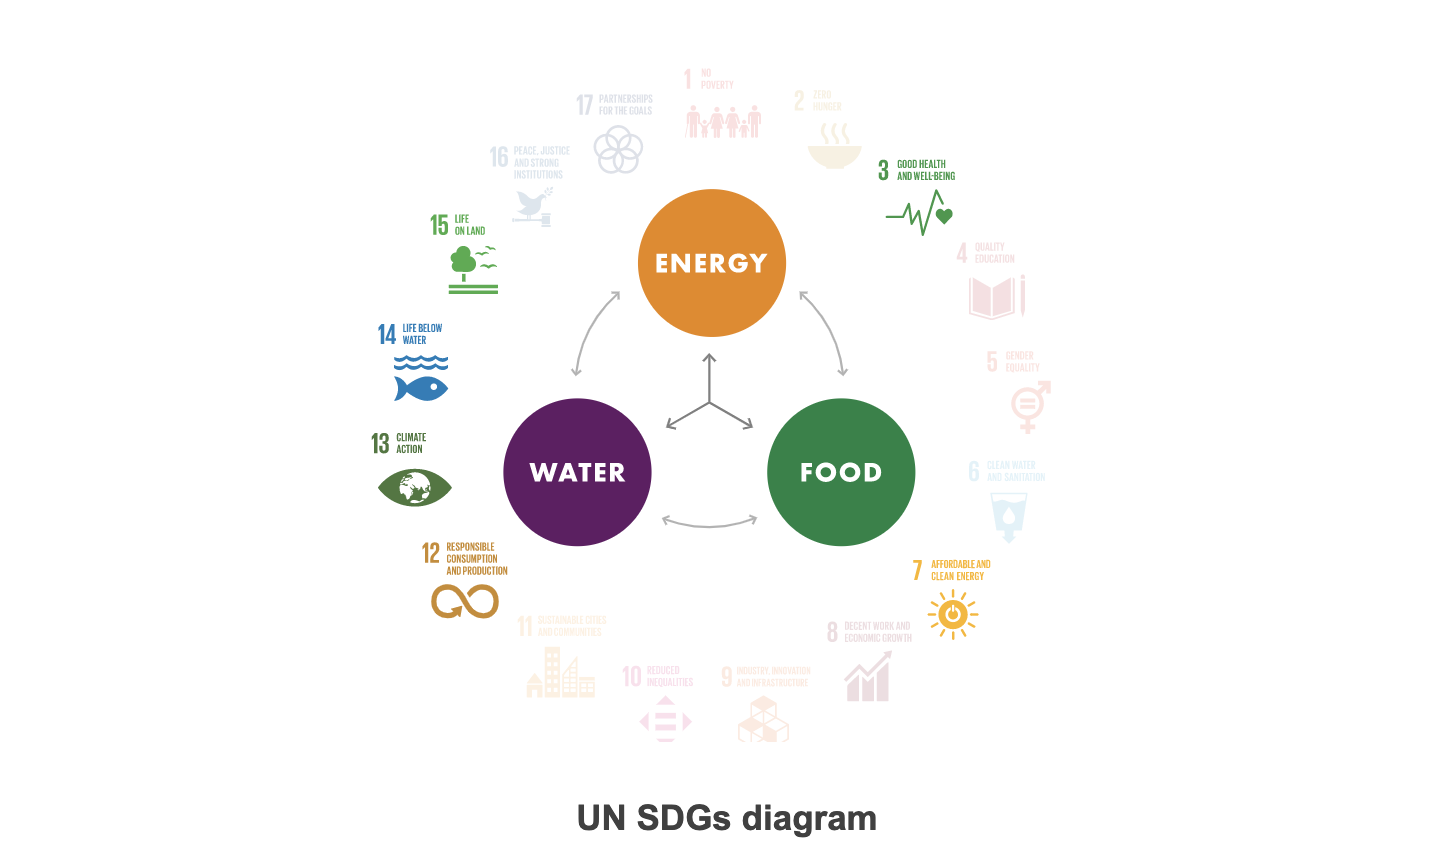 UN SDG Diagram Brazil